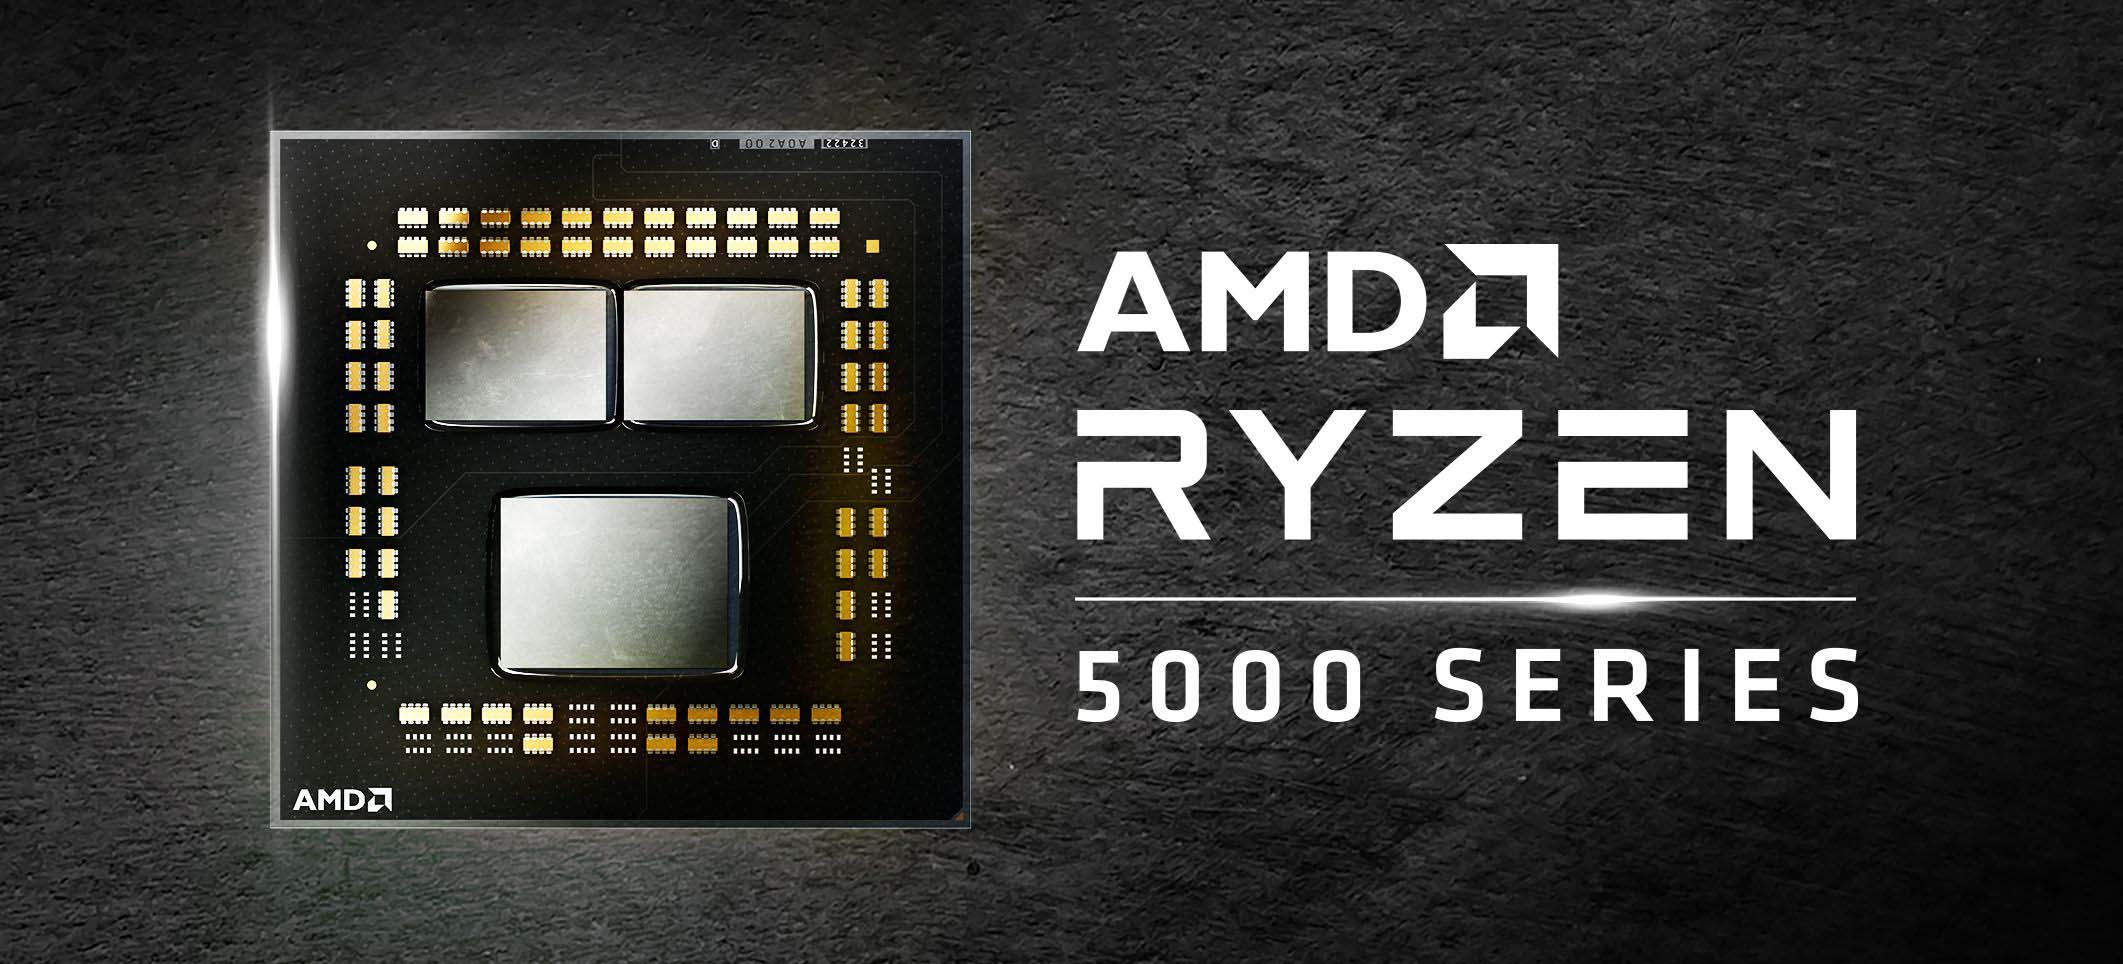 AMD vẫn tiếp tục hỗ trợ AM4 bằng cách cung cấp các CPU Ryzen 5000 mới (Ảnh: Internet)